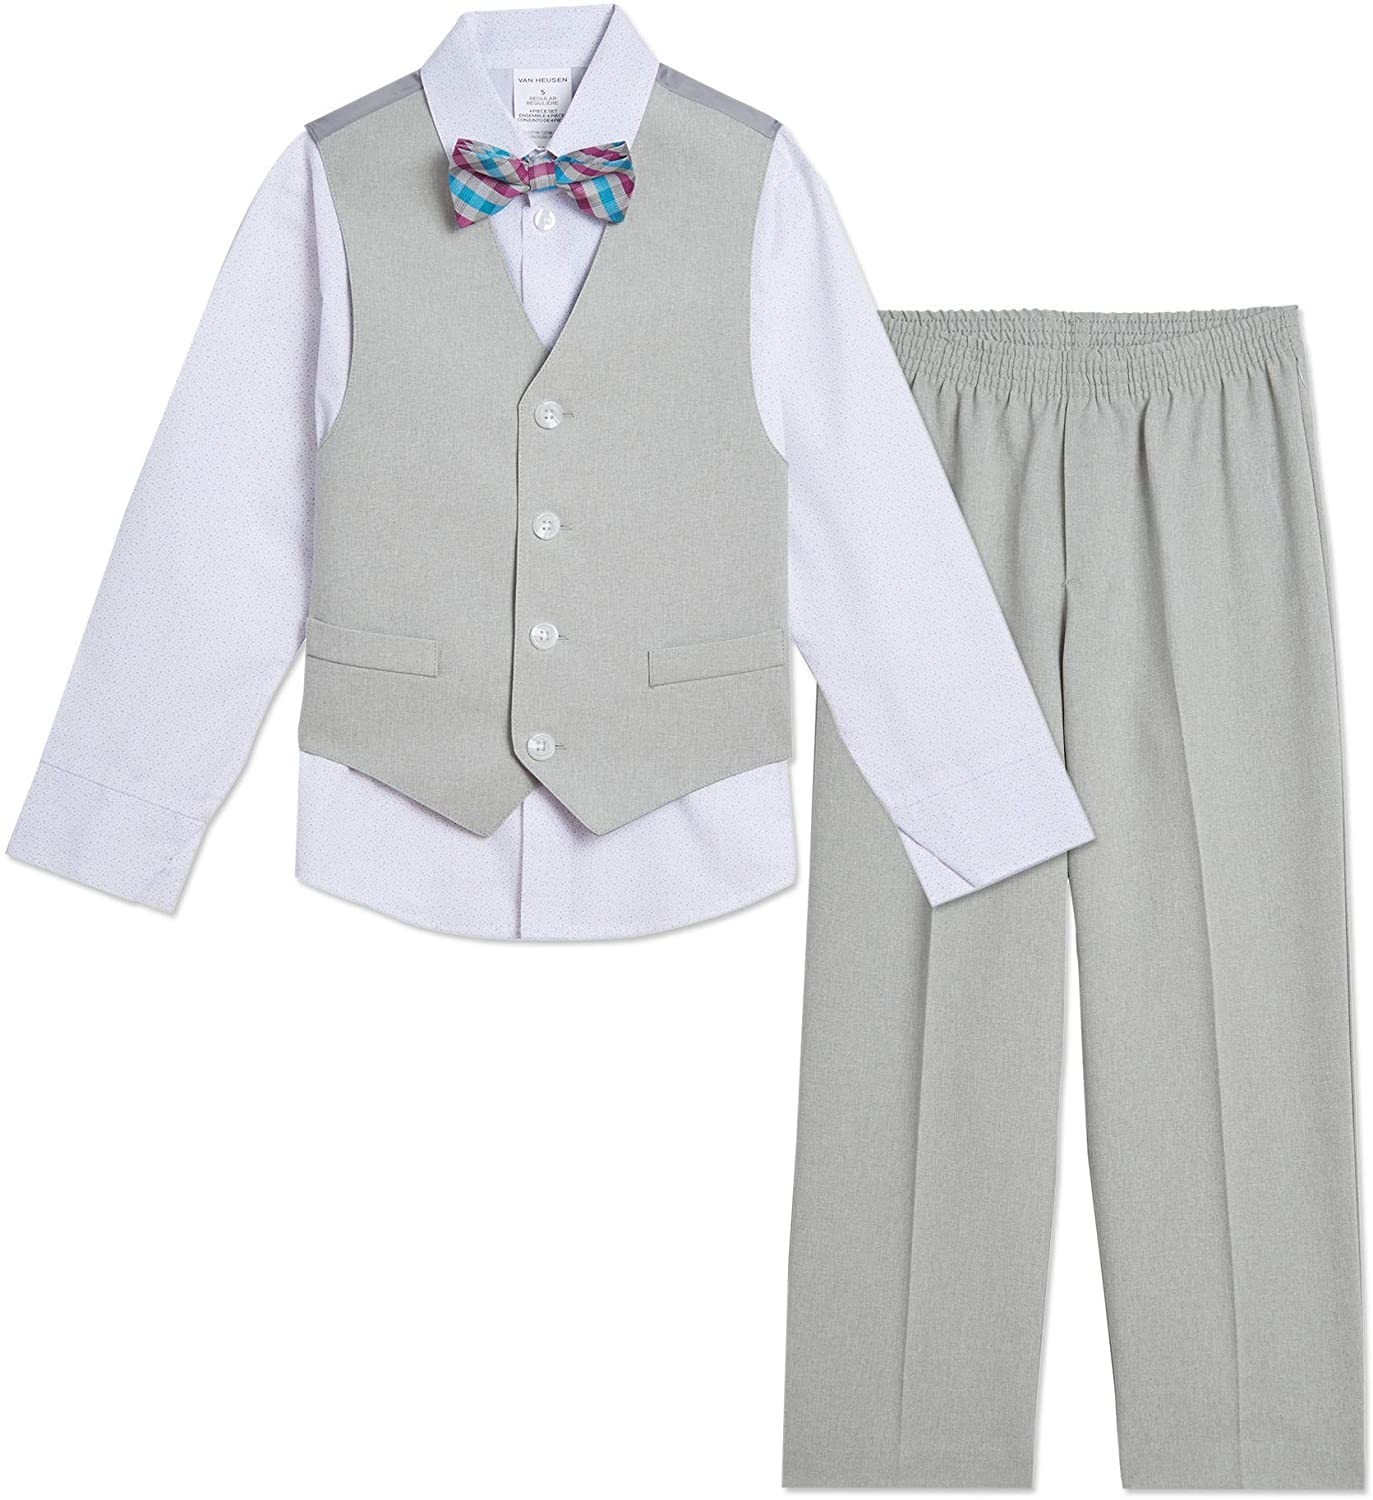 Van Heusen Baby Boys 4-Piece Formal Dress Up Vest Set 